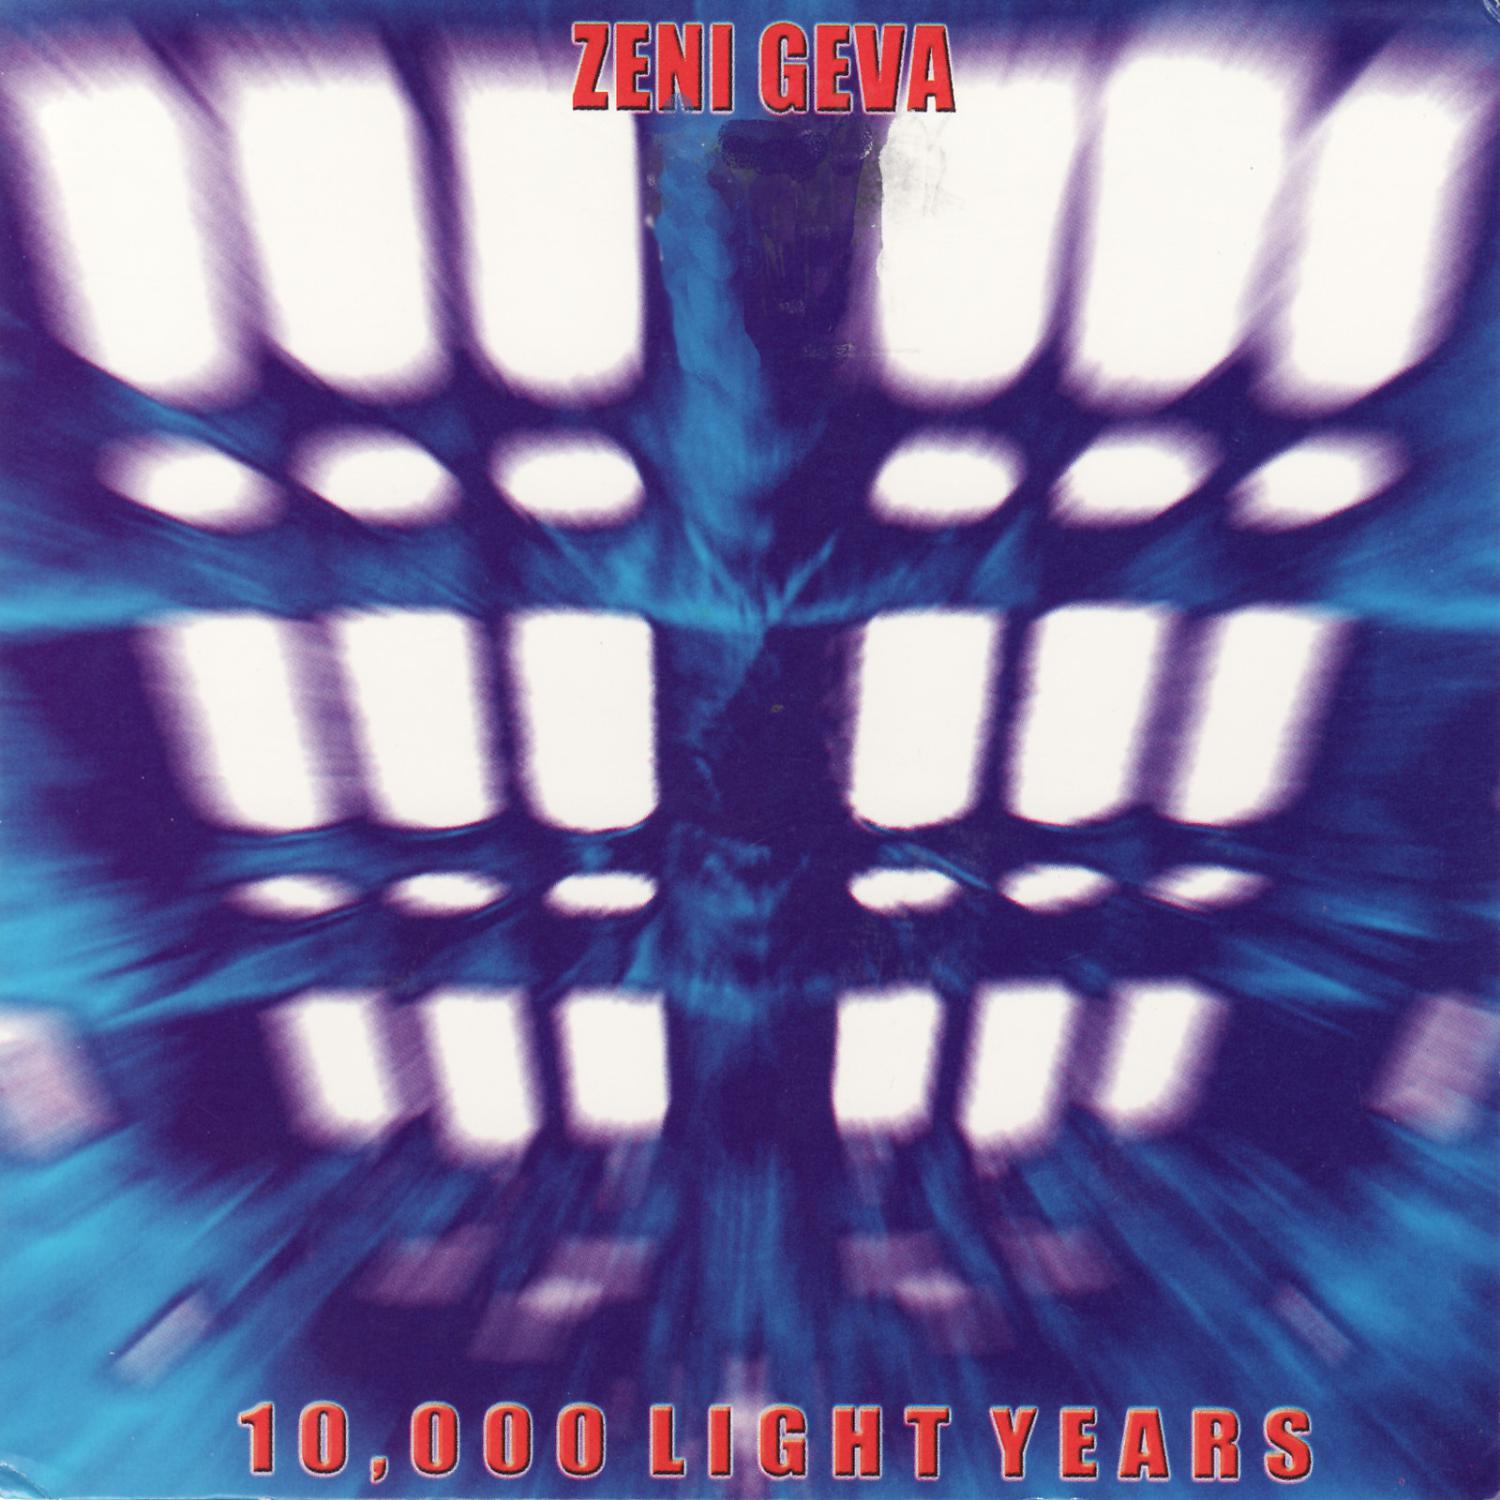 Zeni Geva - Interzona 2